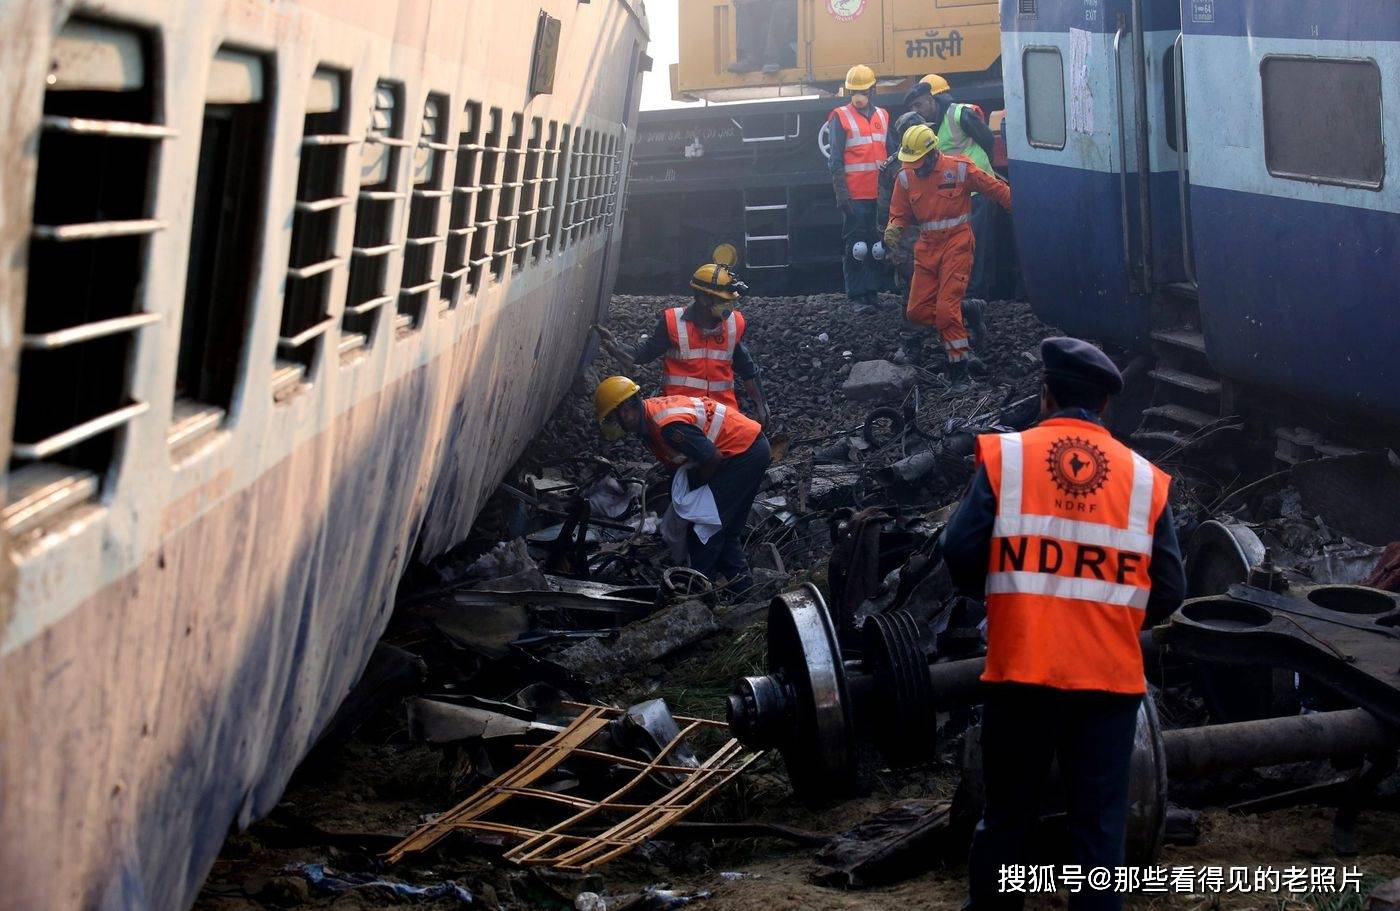 2016年印度列车事故 死亡人数超过140余人